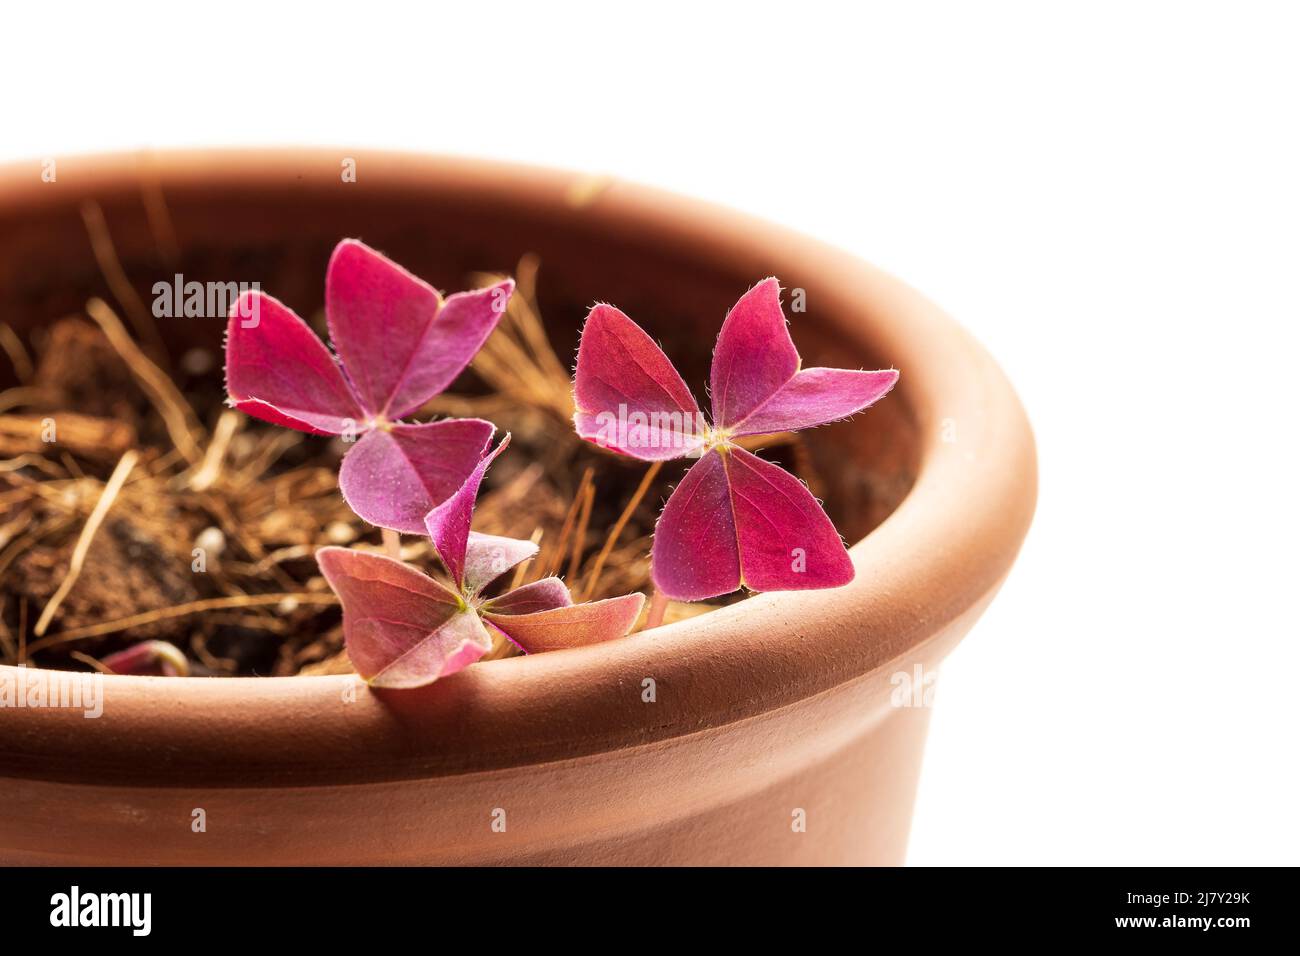 Oxalis Triangularis oder Purple Shamrock Hauspflanze wacht nach der Winterruhe im Terrakotta-Keramiktopf auf. Weißer Hintergrund. Neues Wachstumskonzept Stockfoto